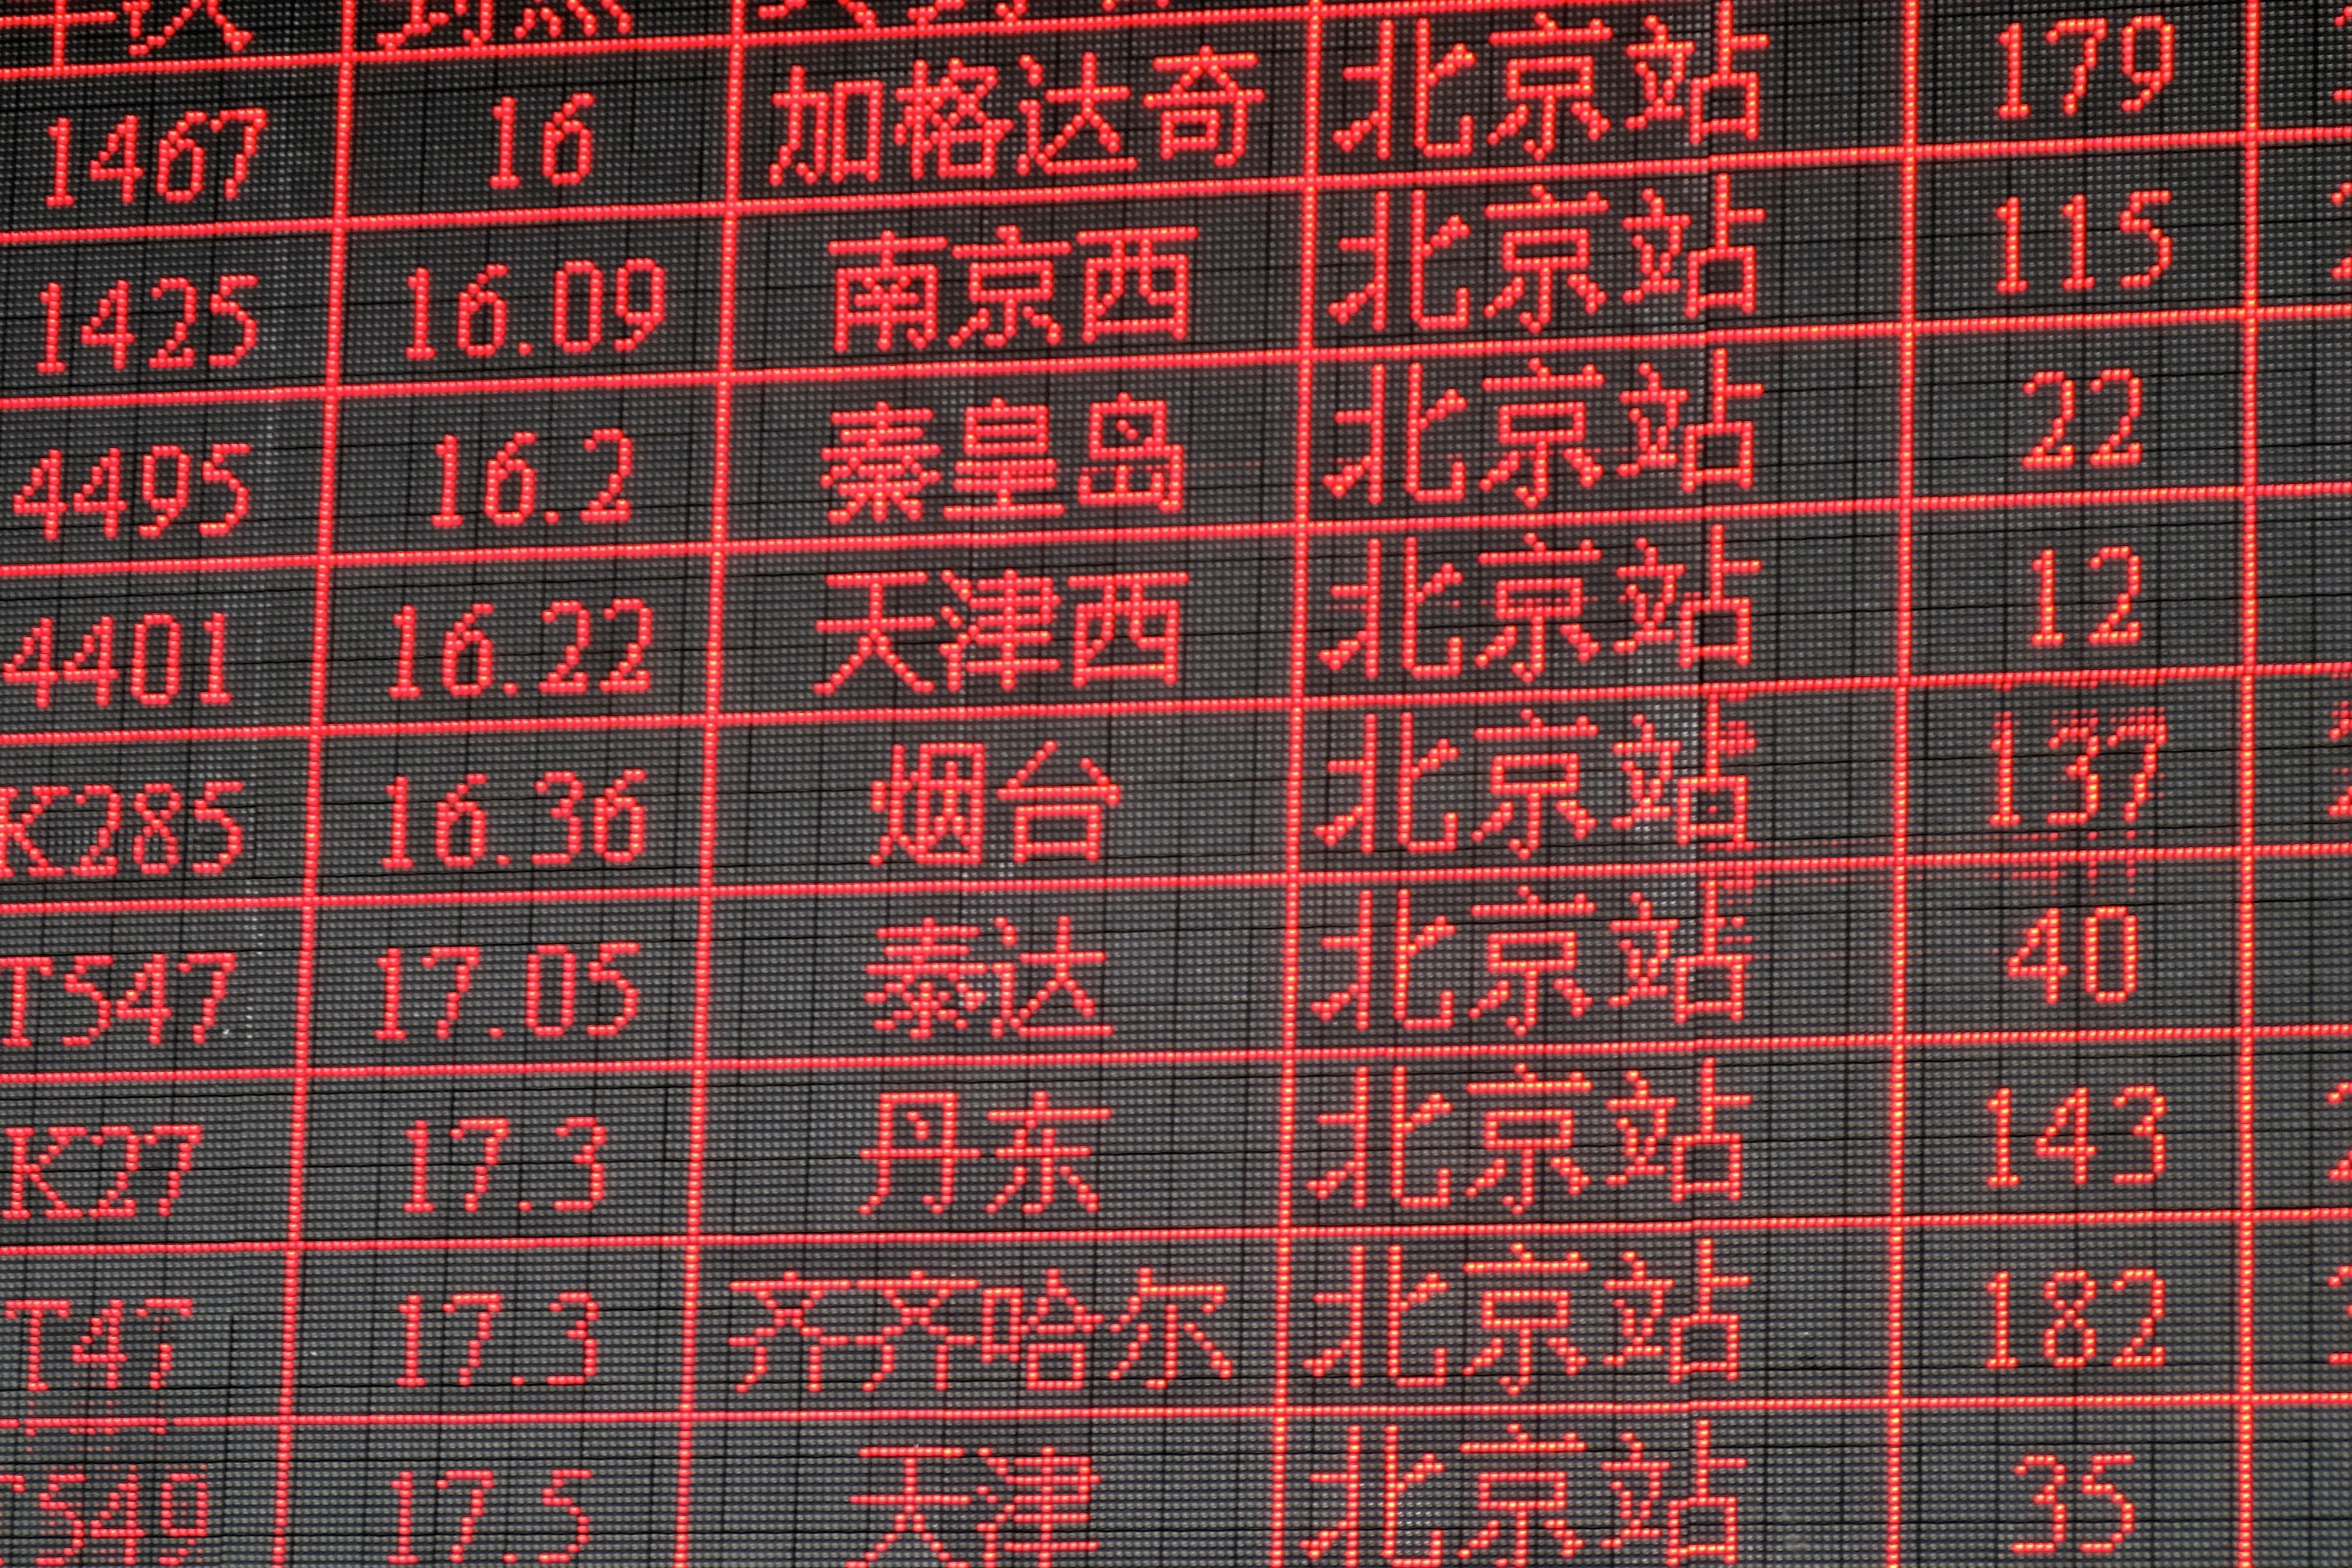 kanji text led signboard